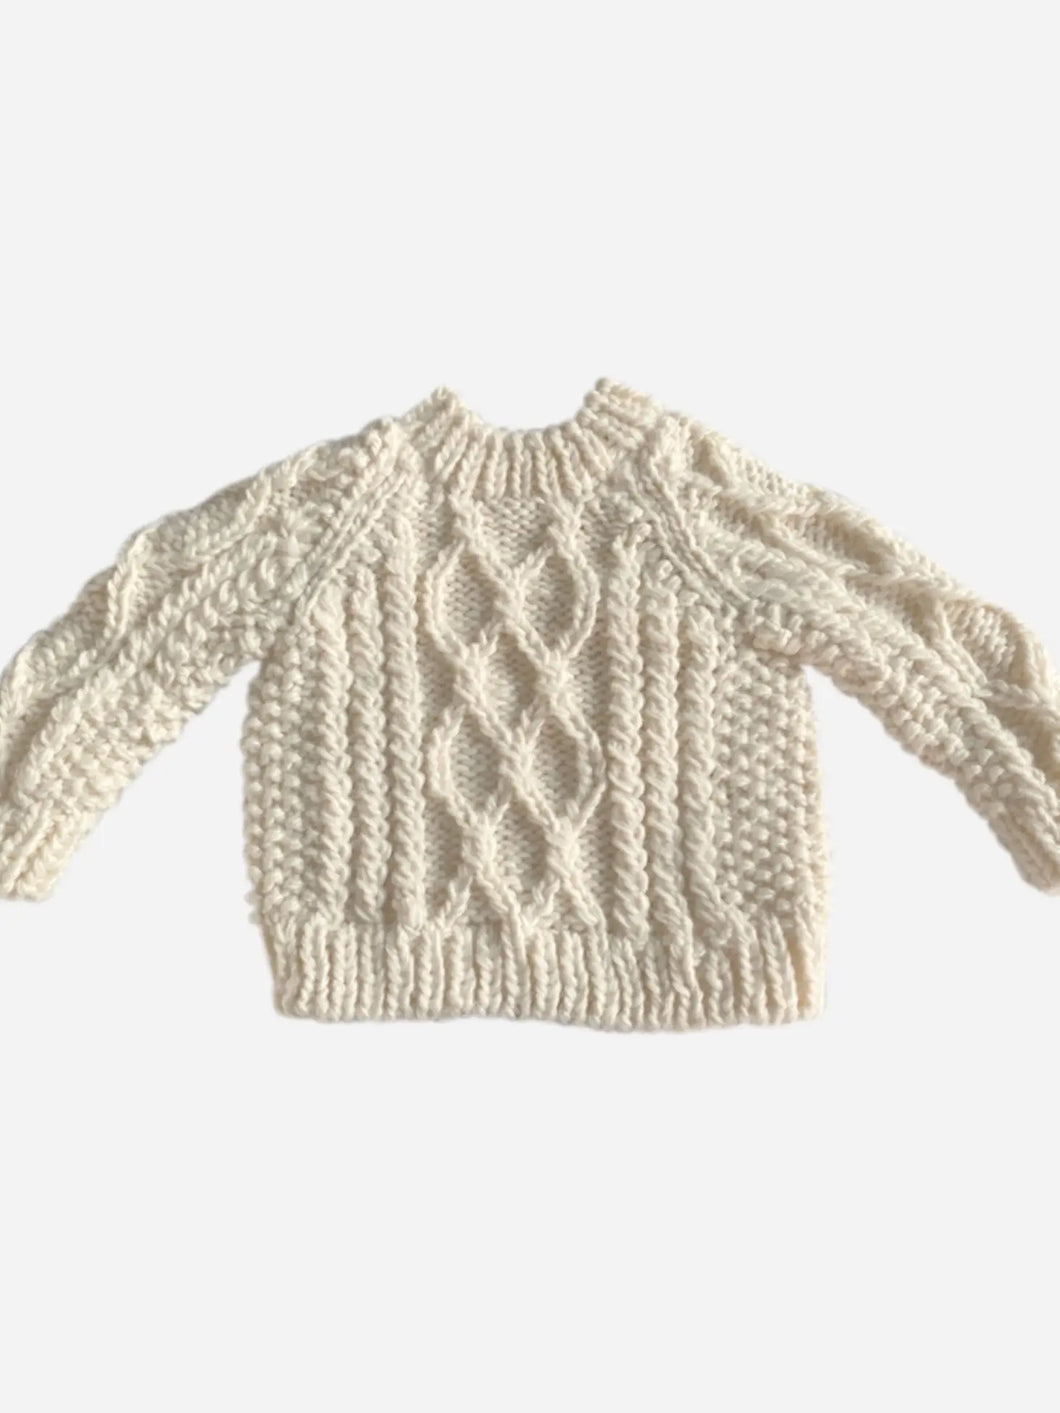 Fisherman Sweater, Cream | Hand Knit Kids & Baby